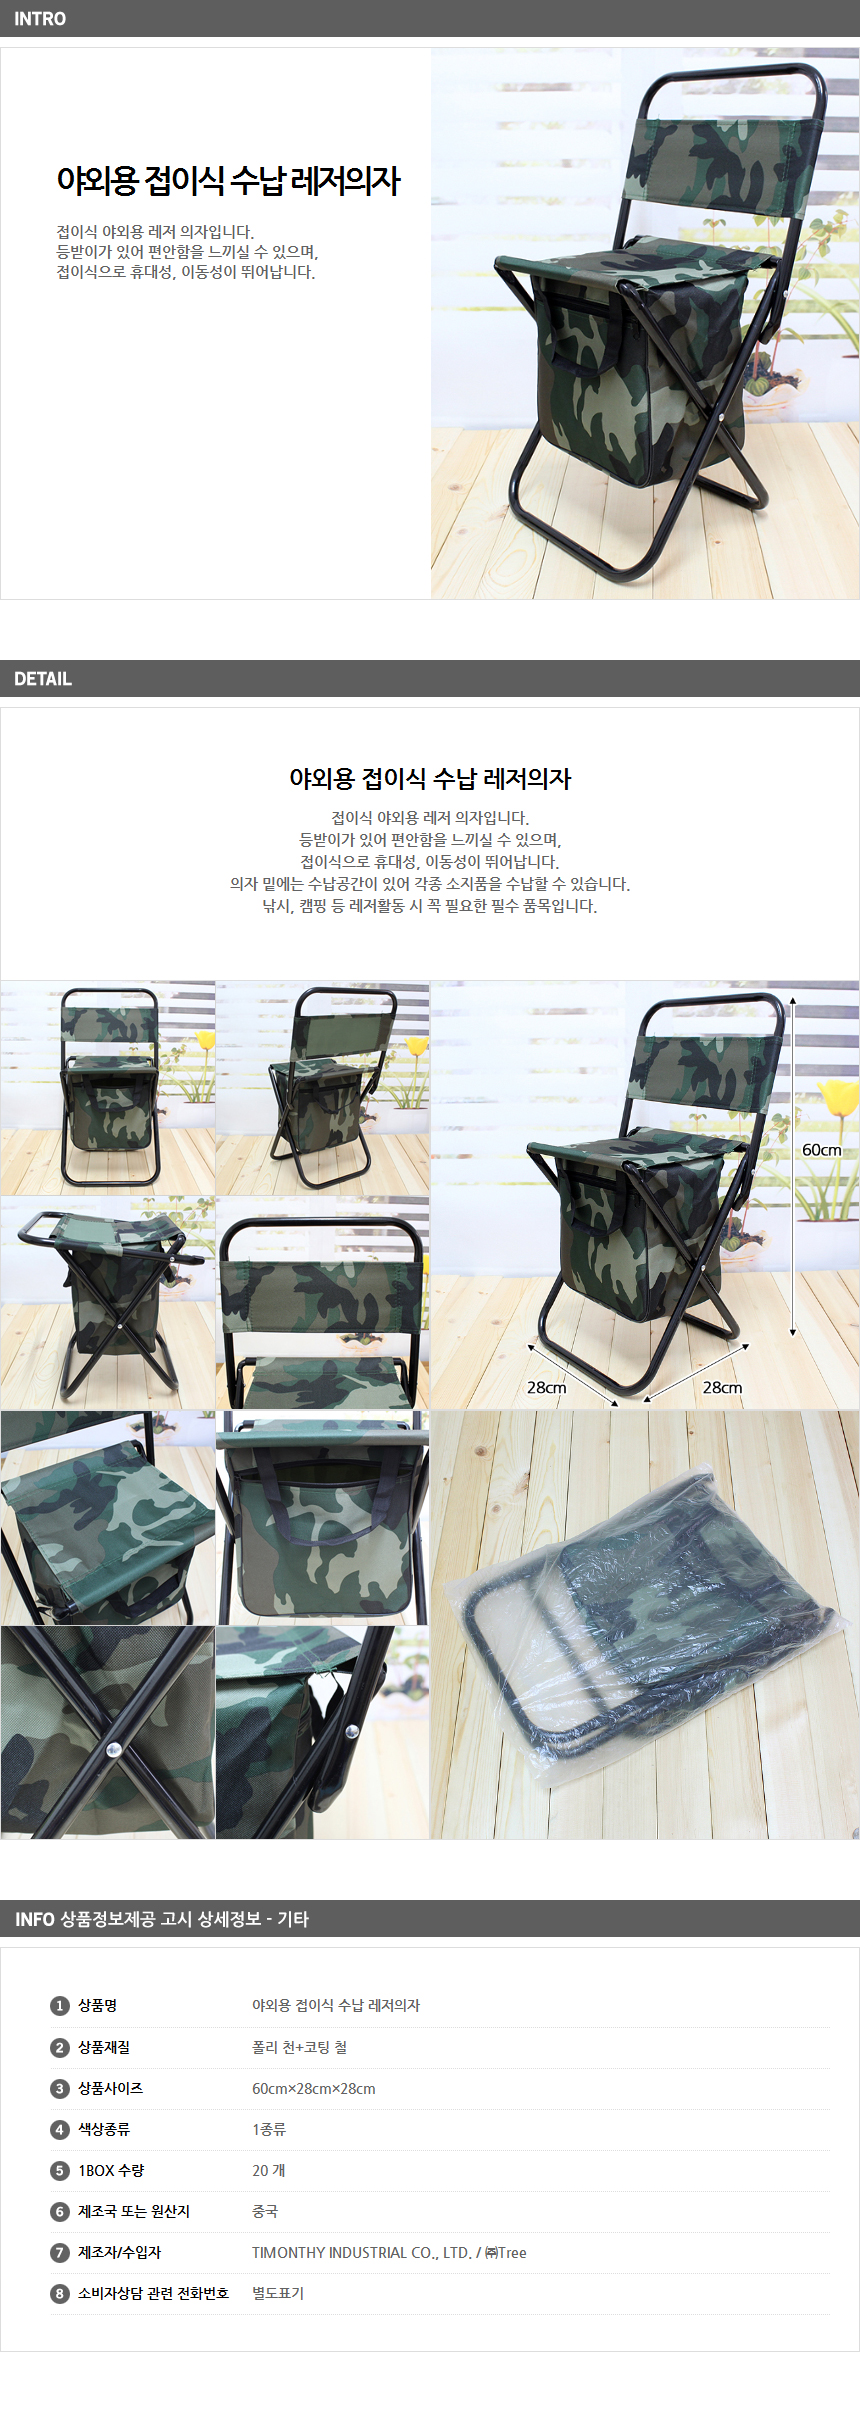 야외용 접이식 수납 레저의자/동호회사은품 캠핑용품